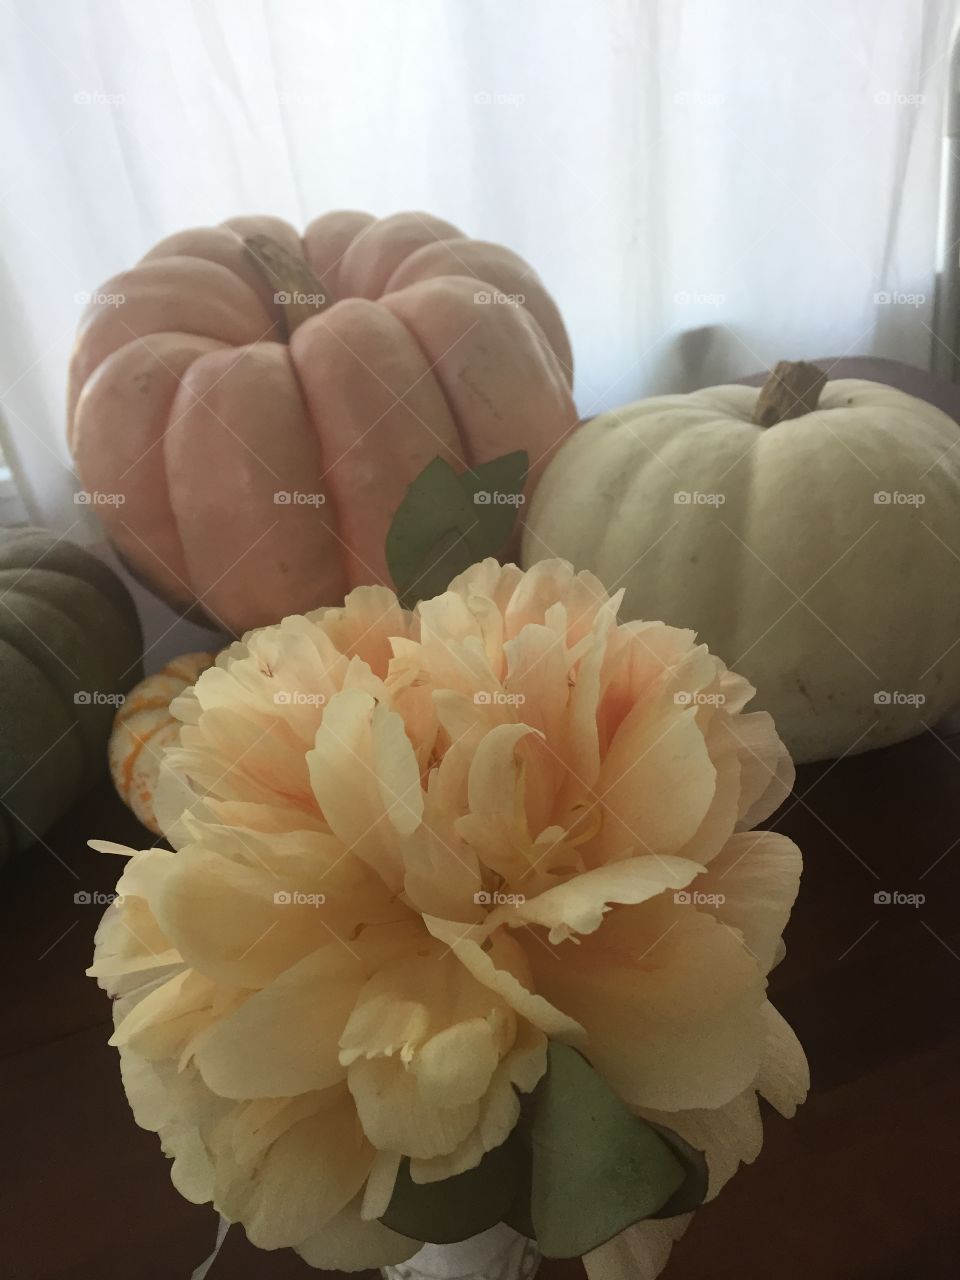 Fall pumpkin colors